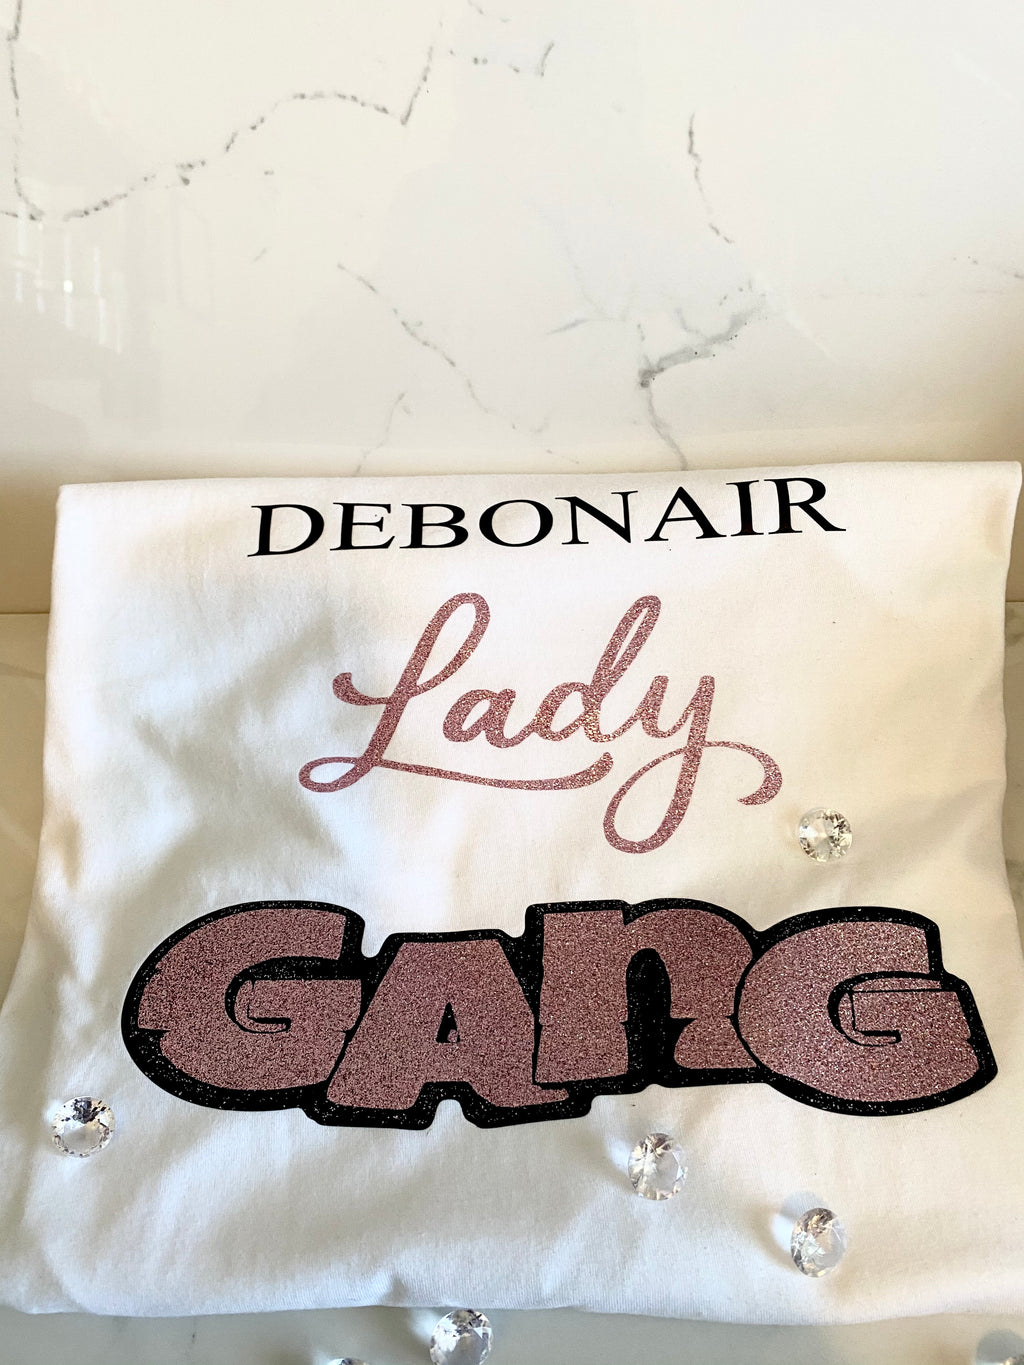 Lady Gang T-shirt